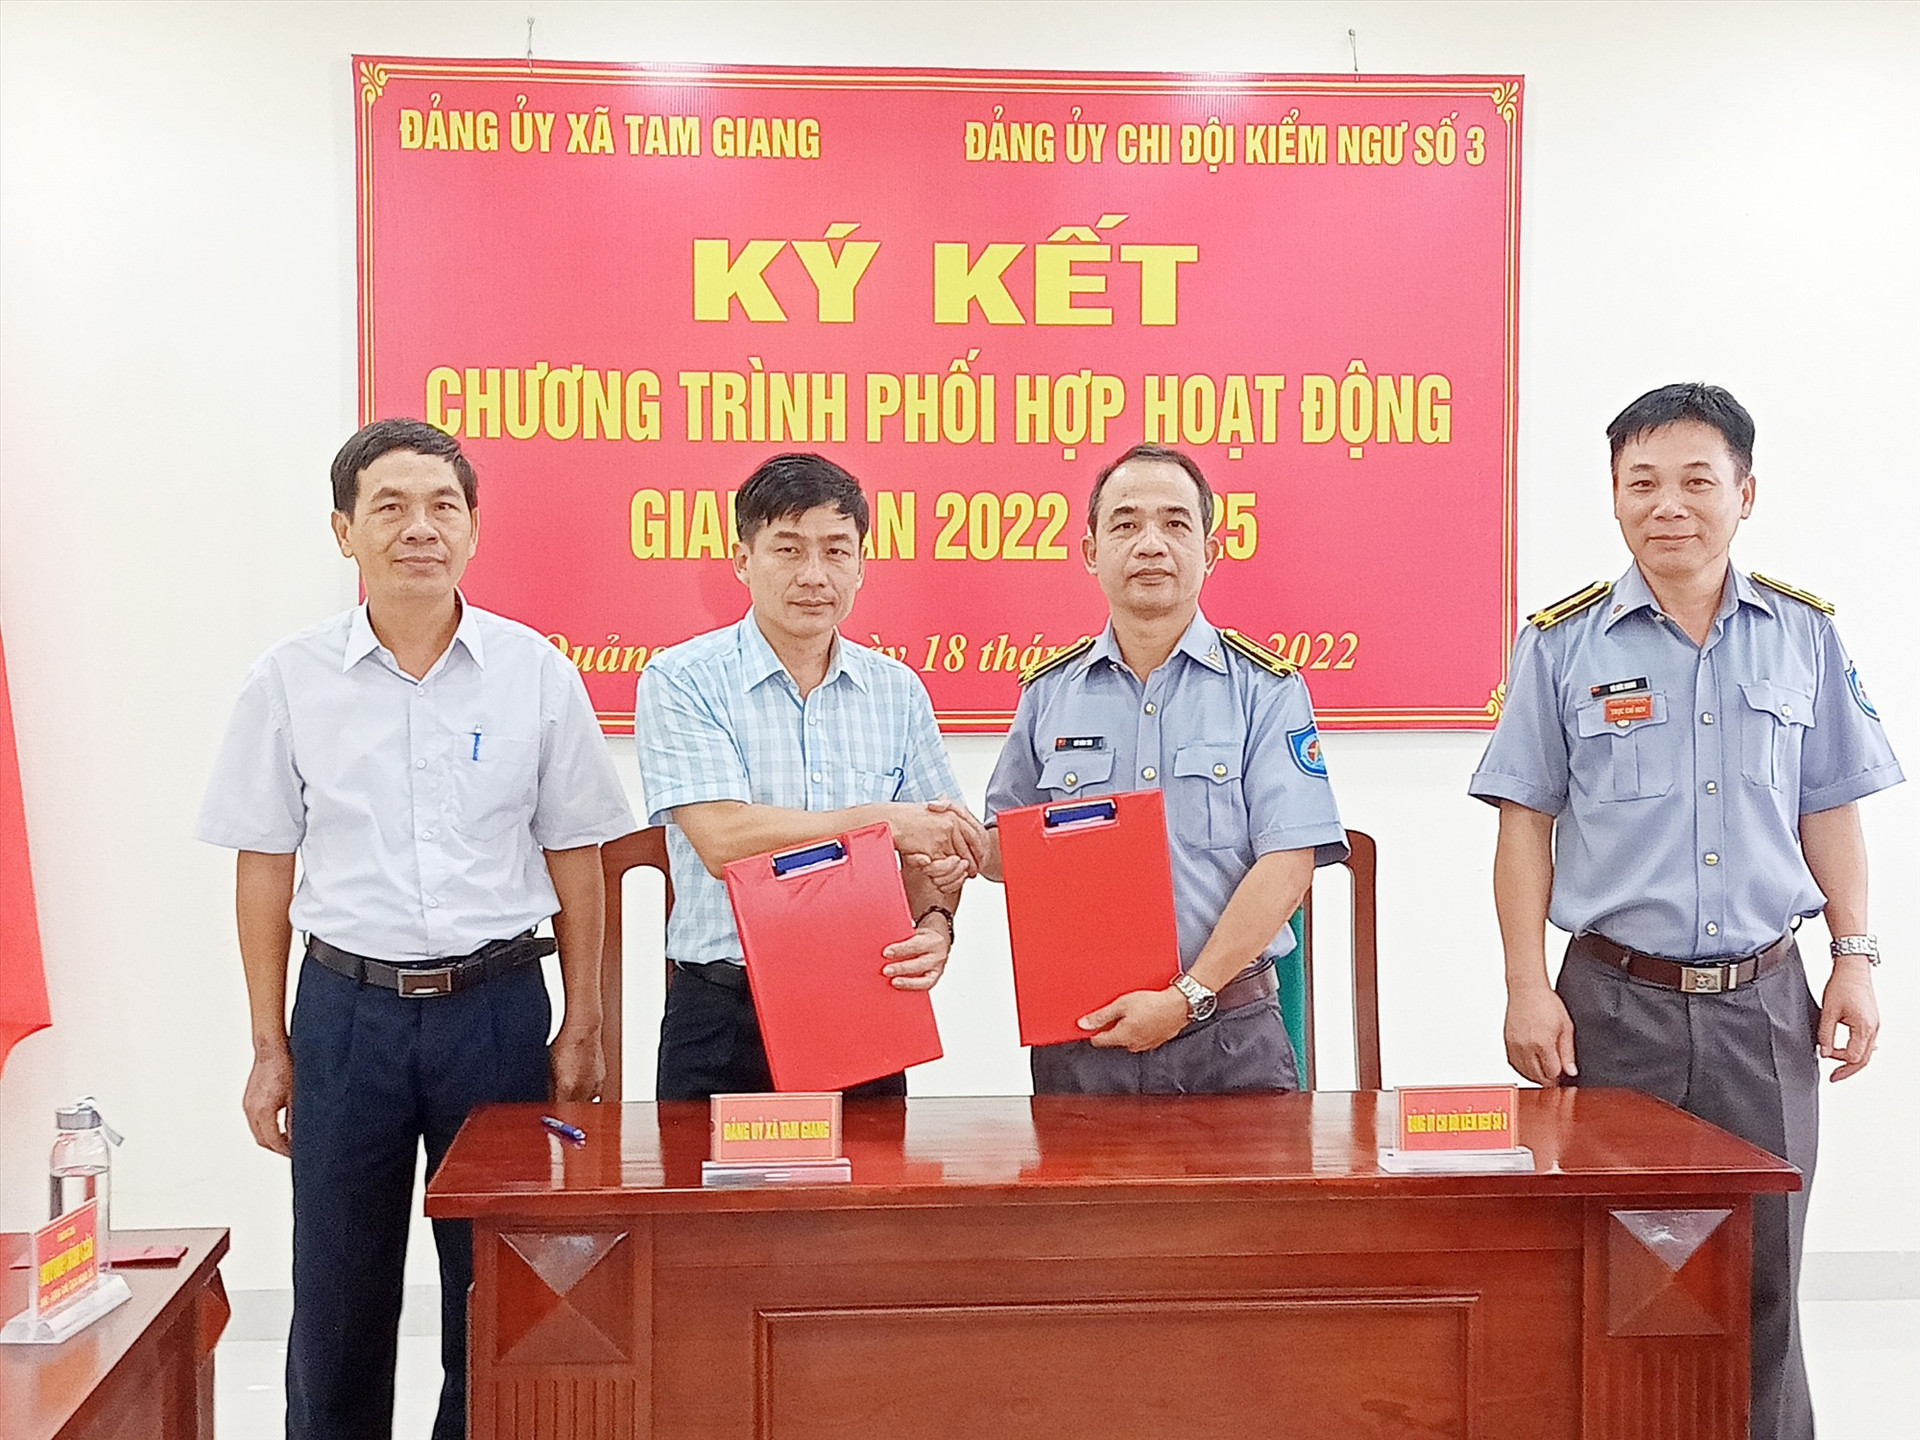 Chi đội Kiểm ngú số 3 và xã Tam Giang ký kết phối hợp hoạt động Ảnh Văn Phin